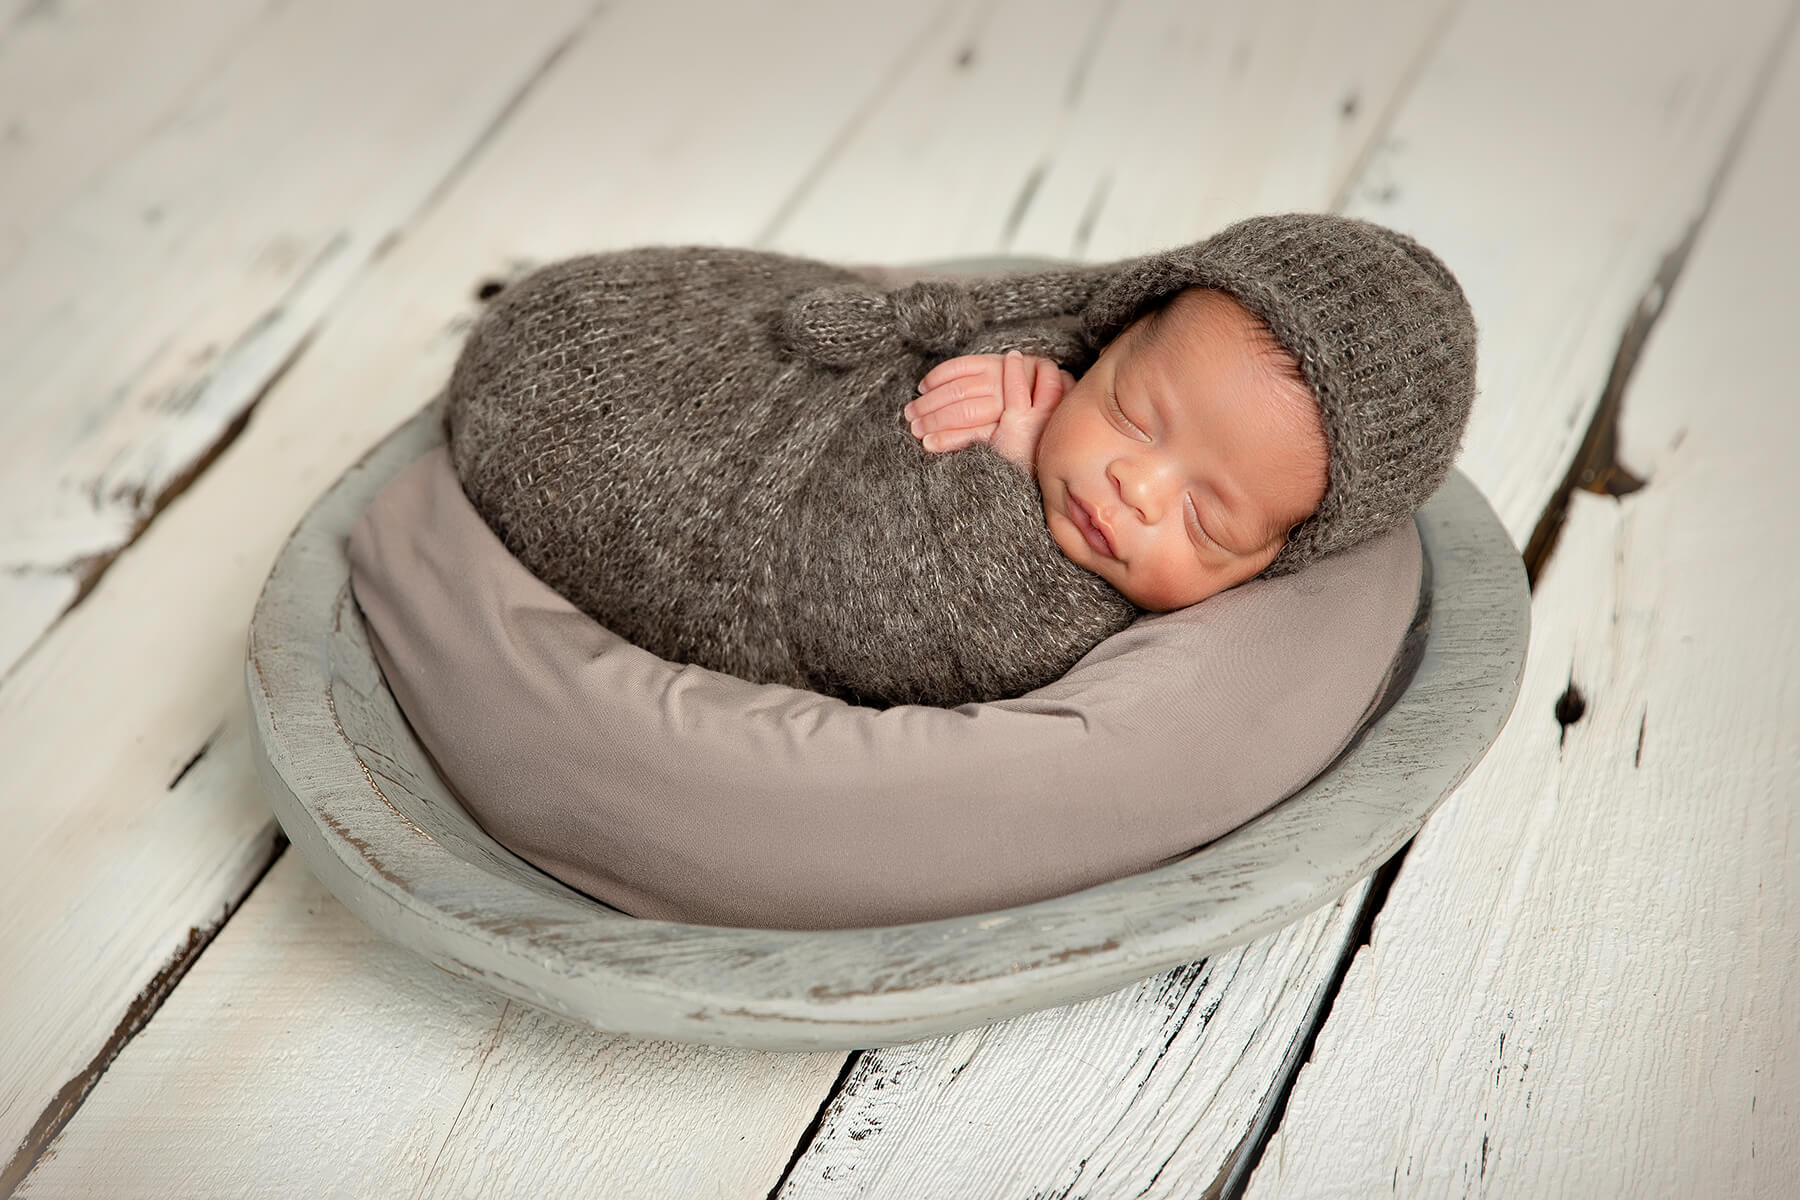 Un photographe capture des photos magnifiques d'un nouveau-né paisiblement endormi dans un bol posé sur un plancher en bois.